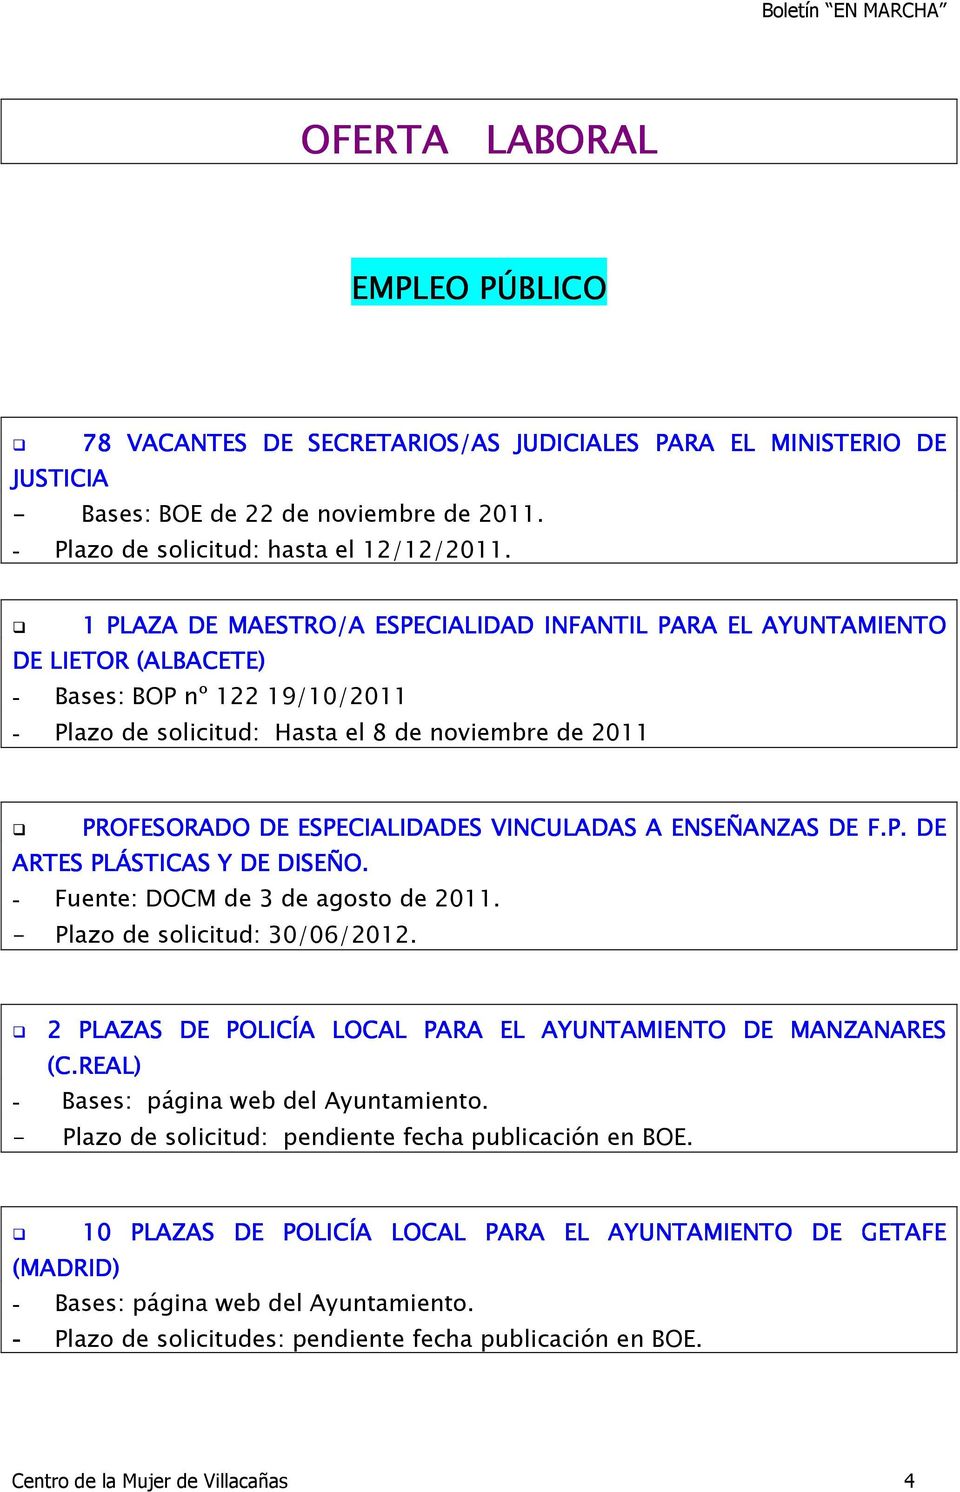 VINCULADAS A ENSEÑANZAS DE F.P. DE ARTES PLÁSTICAS Y DE DISEÑO. - Fuente: DOCM de 3 de agosto de 2011. - Plazo de solicitud: 30/06/2012.